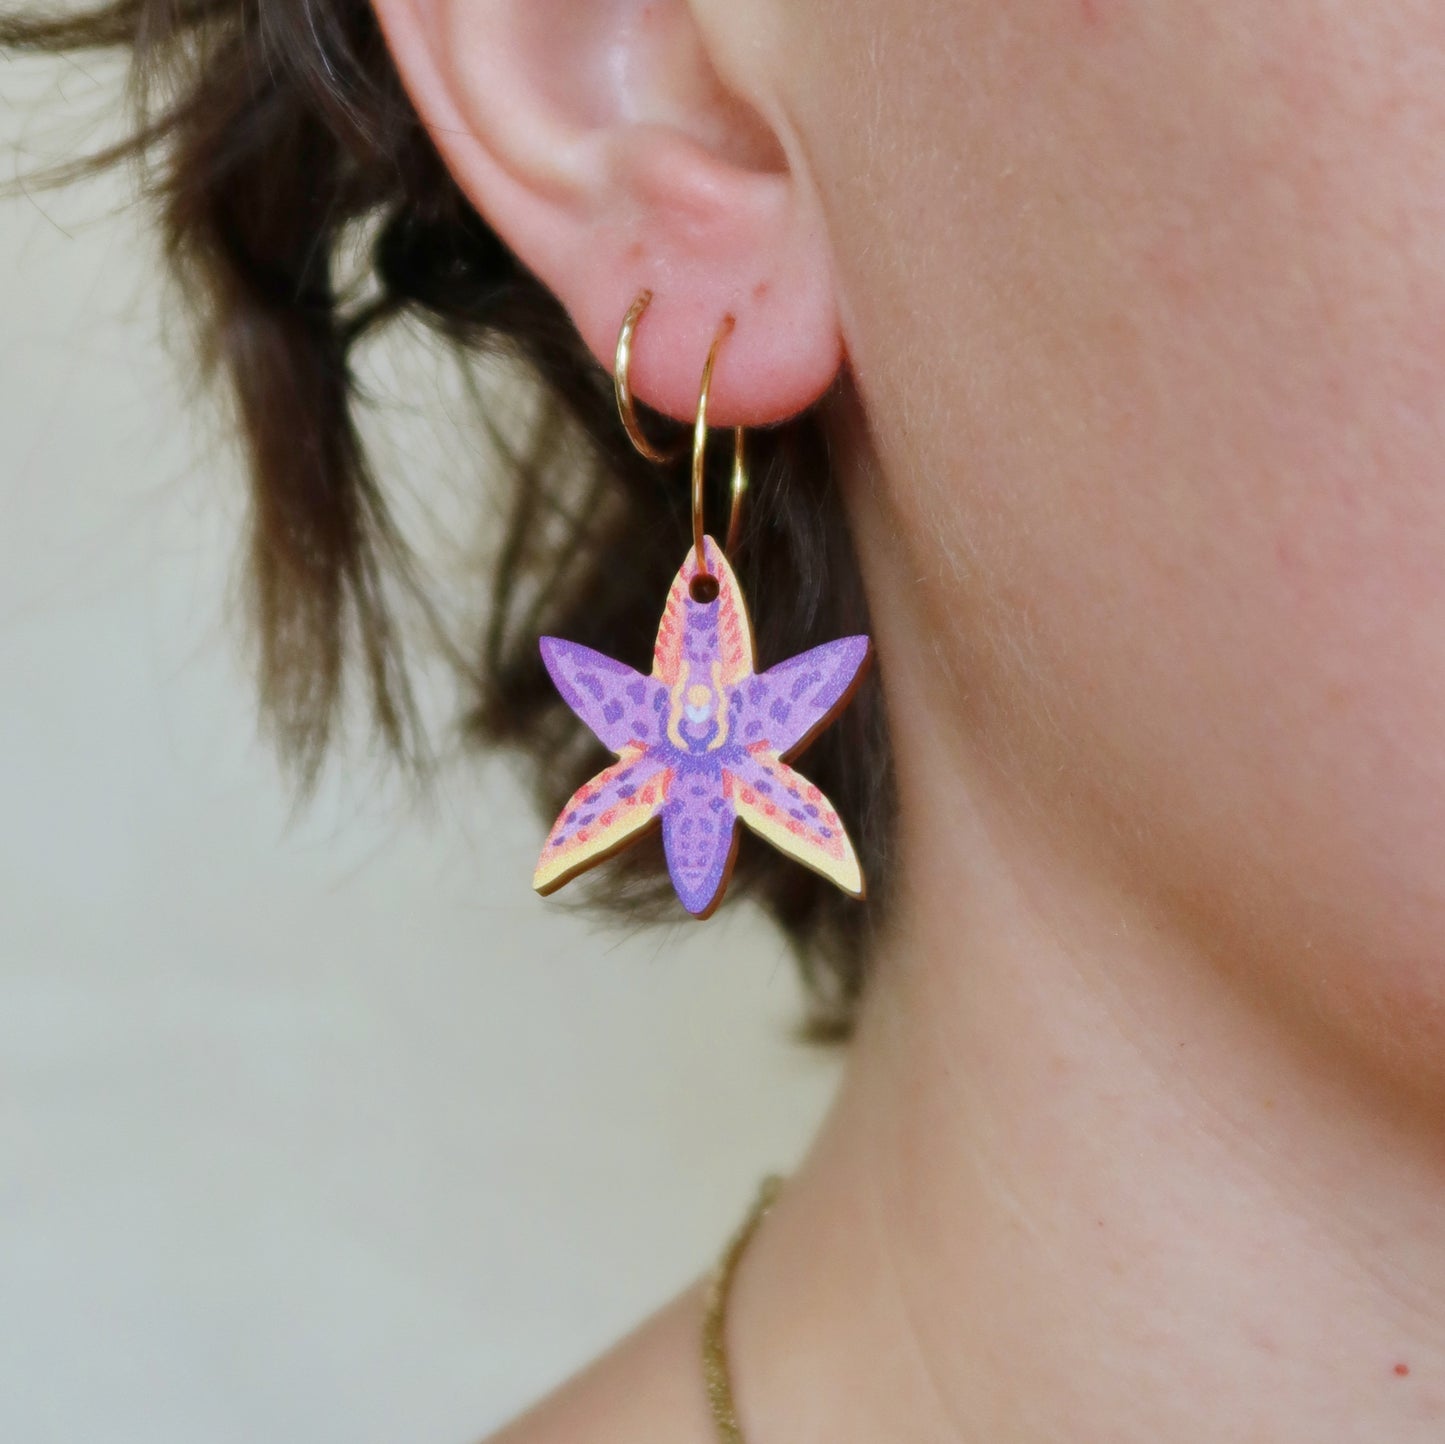 Australian wildflower Queen of Sheba Orchid wooden hoop earrings